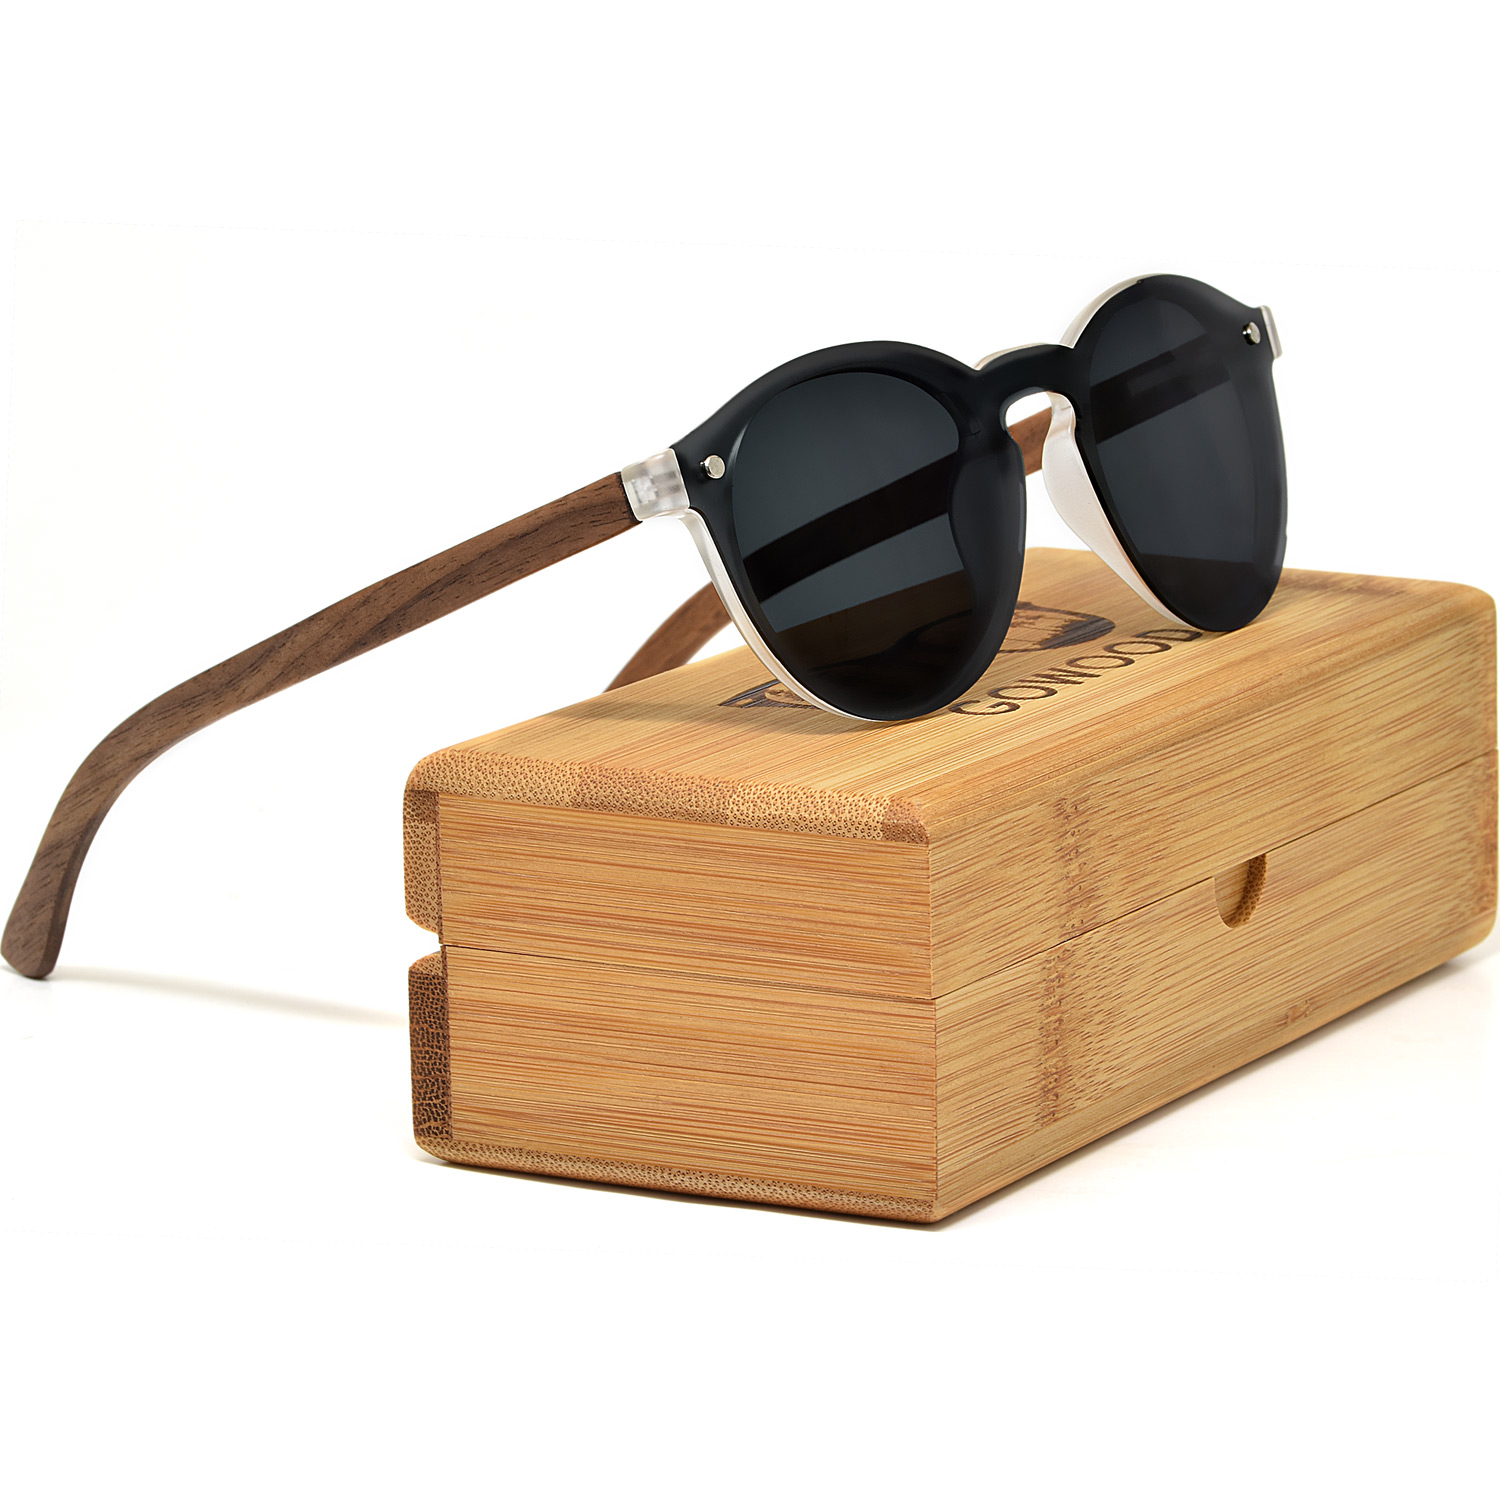 Round walnut wood sunglasses with black polarized one piece lens